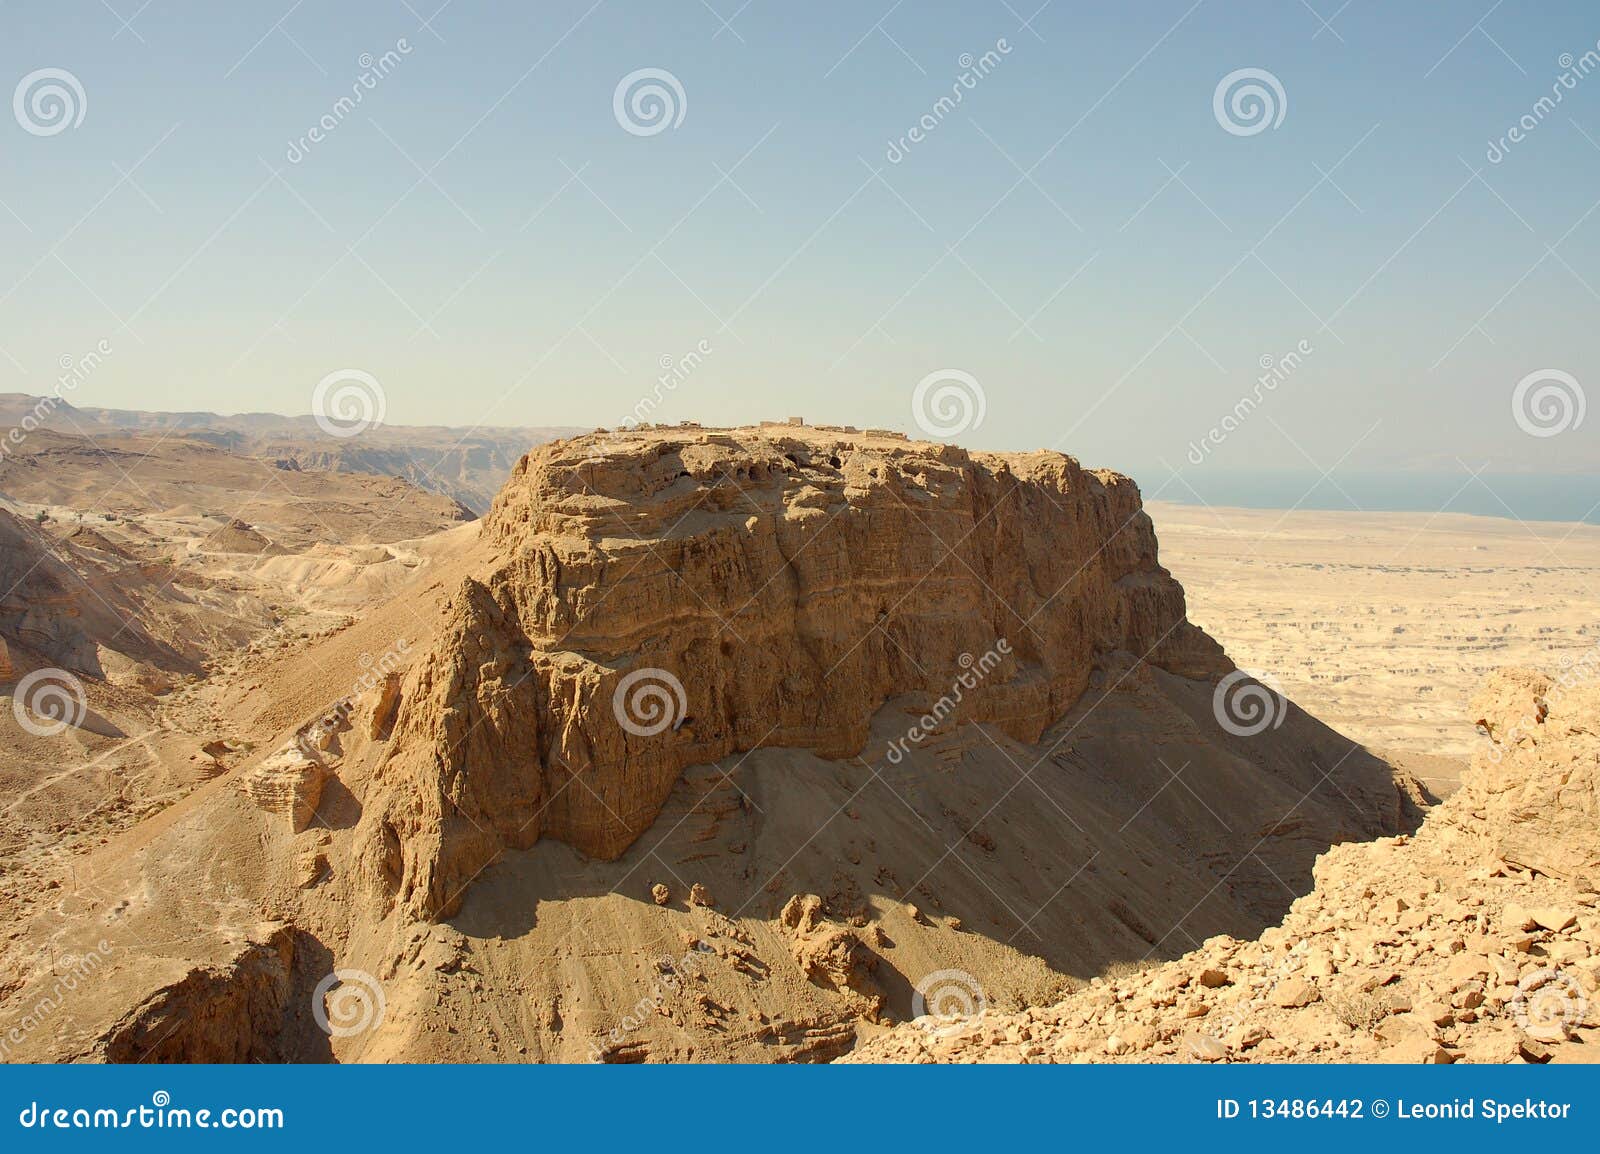 masada stronghold, israel.